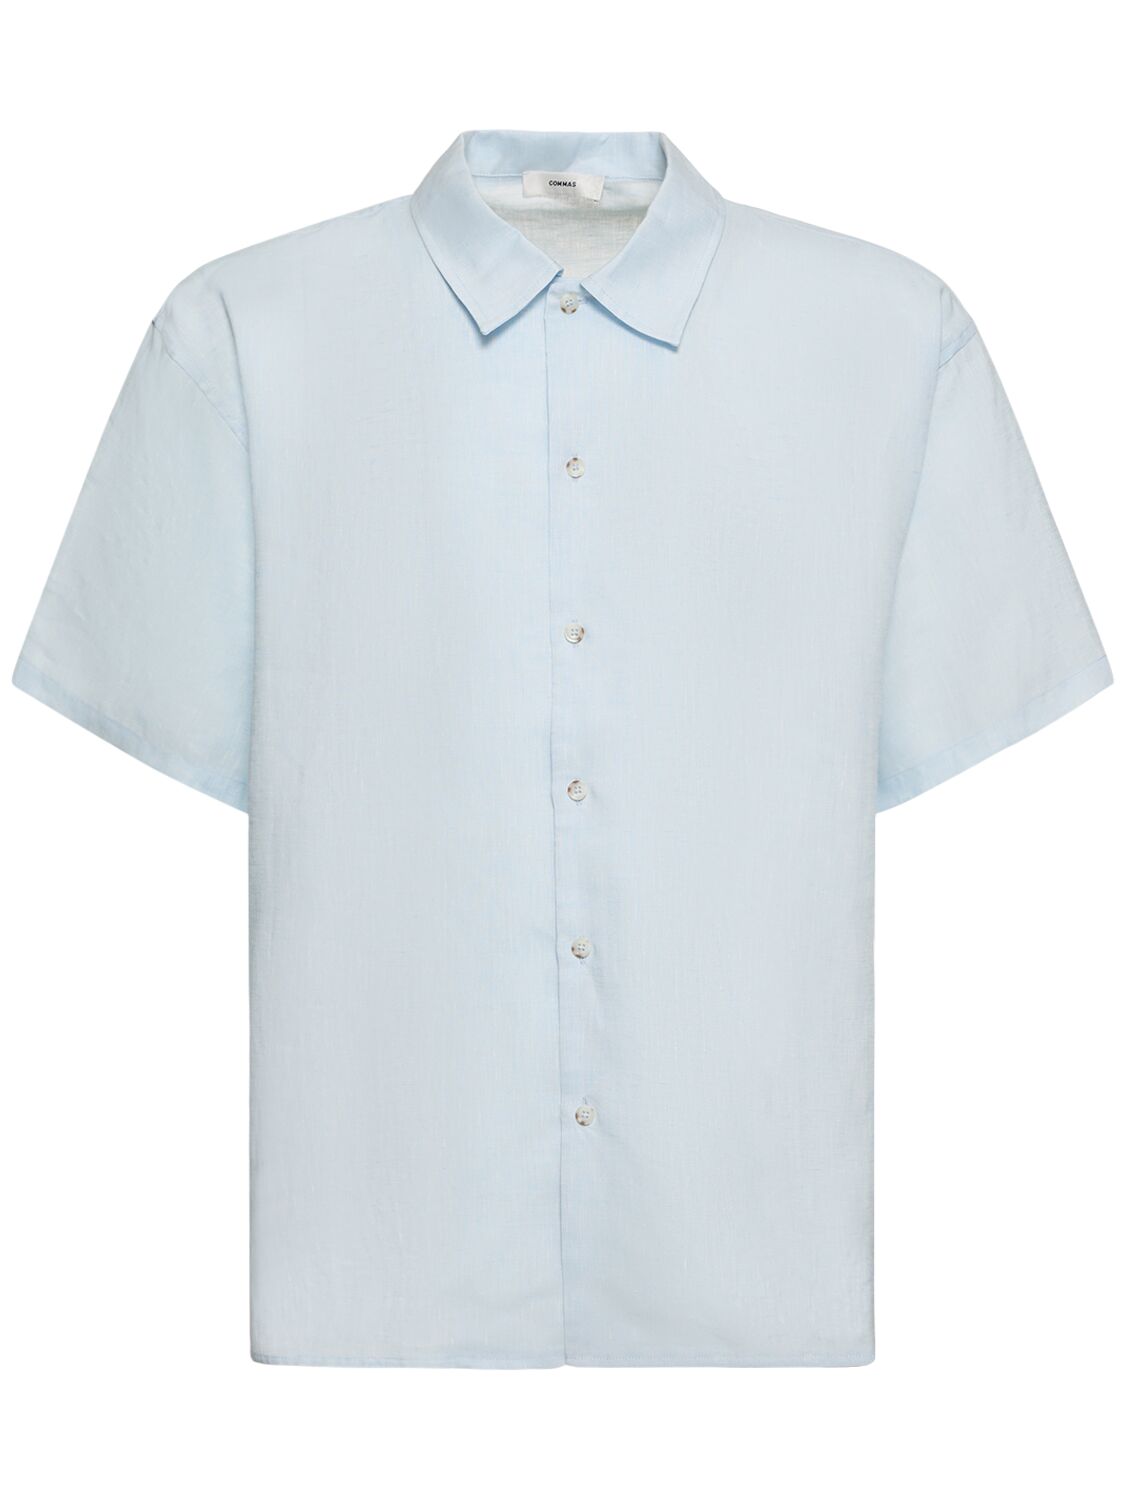 COMMAS Oversize Linen Short Sleeve Shirt